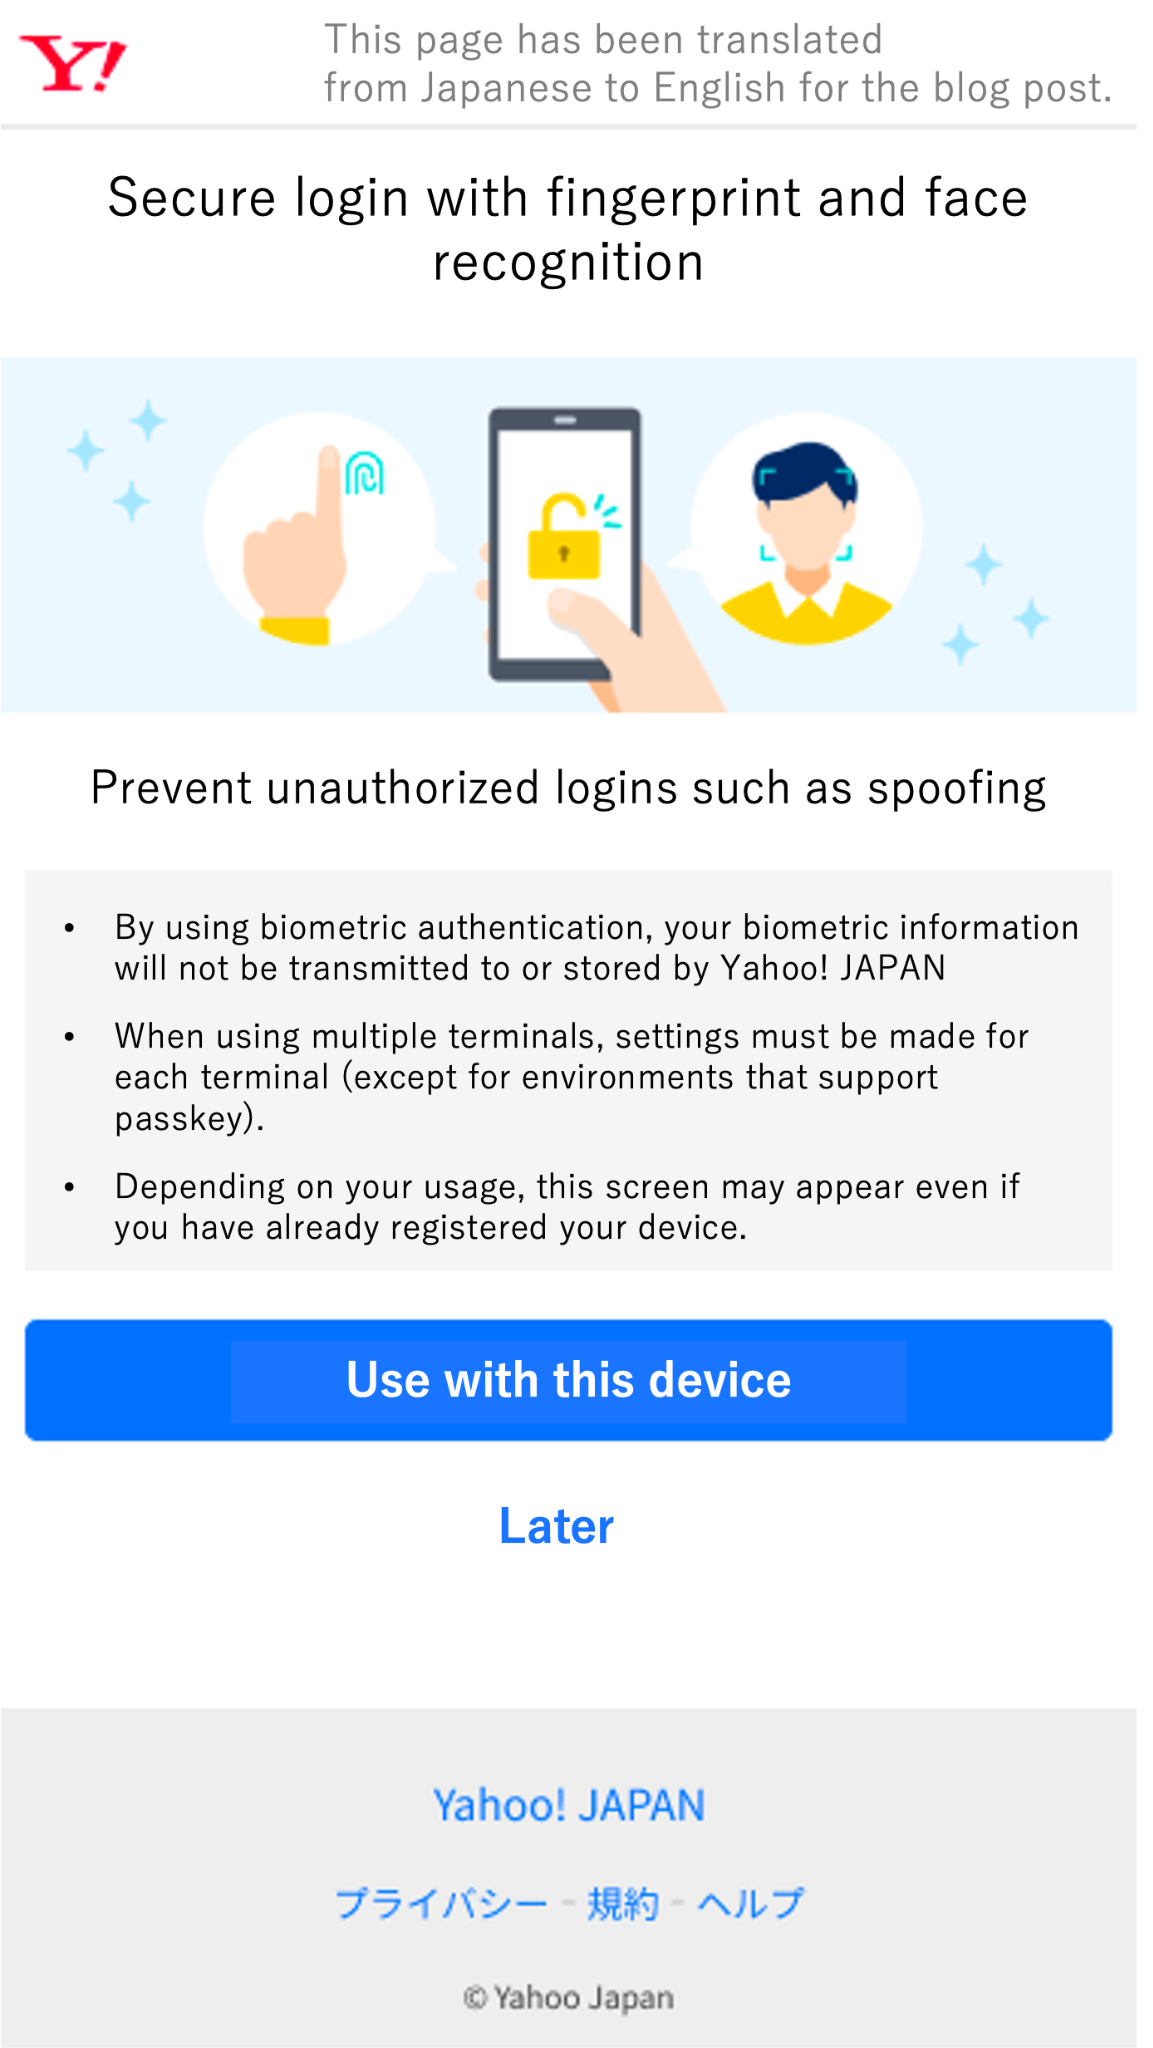 Englische Übersetzung der Yahoo! JAPAN-Passkey-Registrierungsseite unter iOS (Kontrollgruppe).